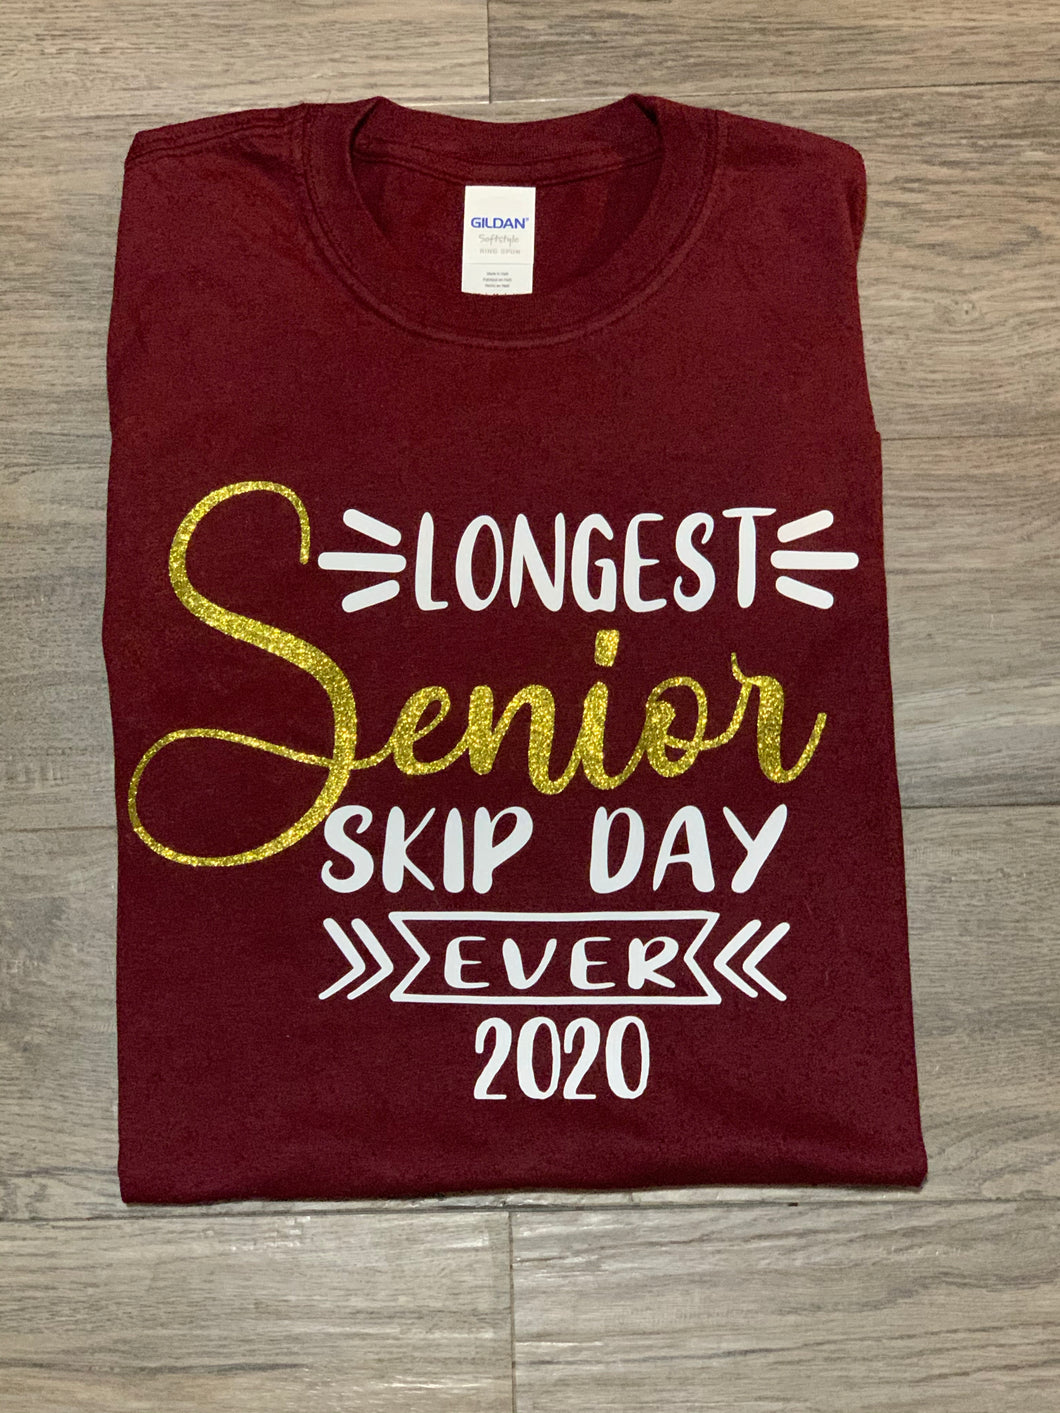 Senior 2020 - longest senior skip day